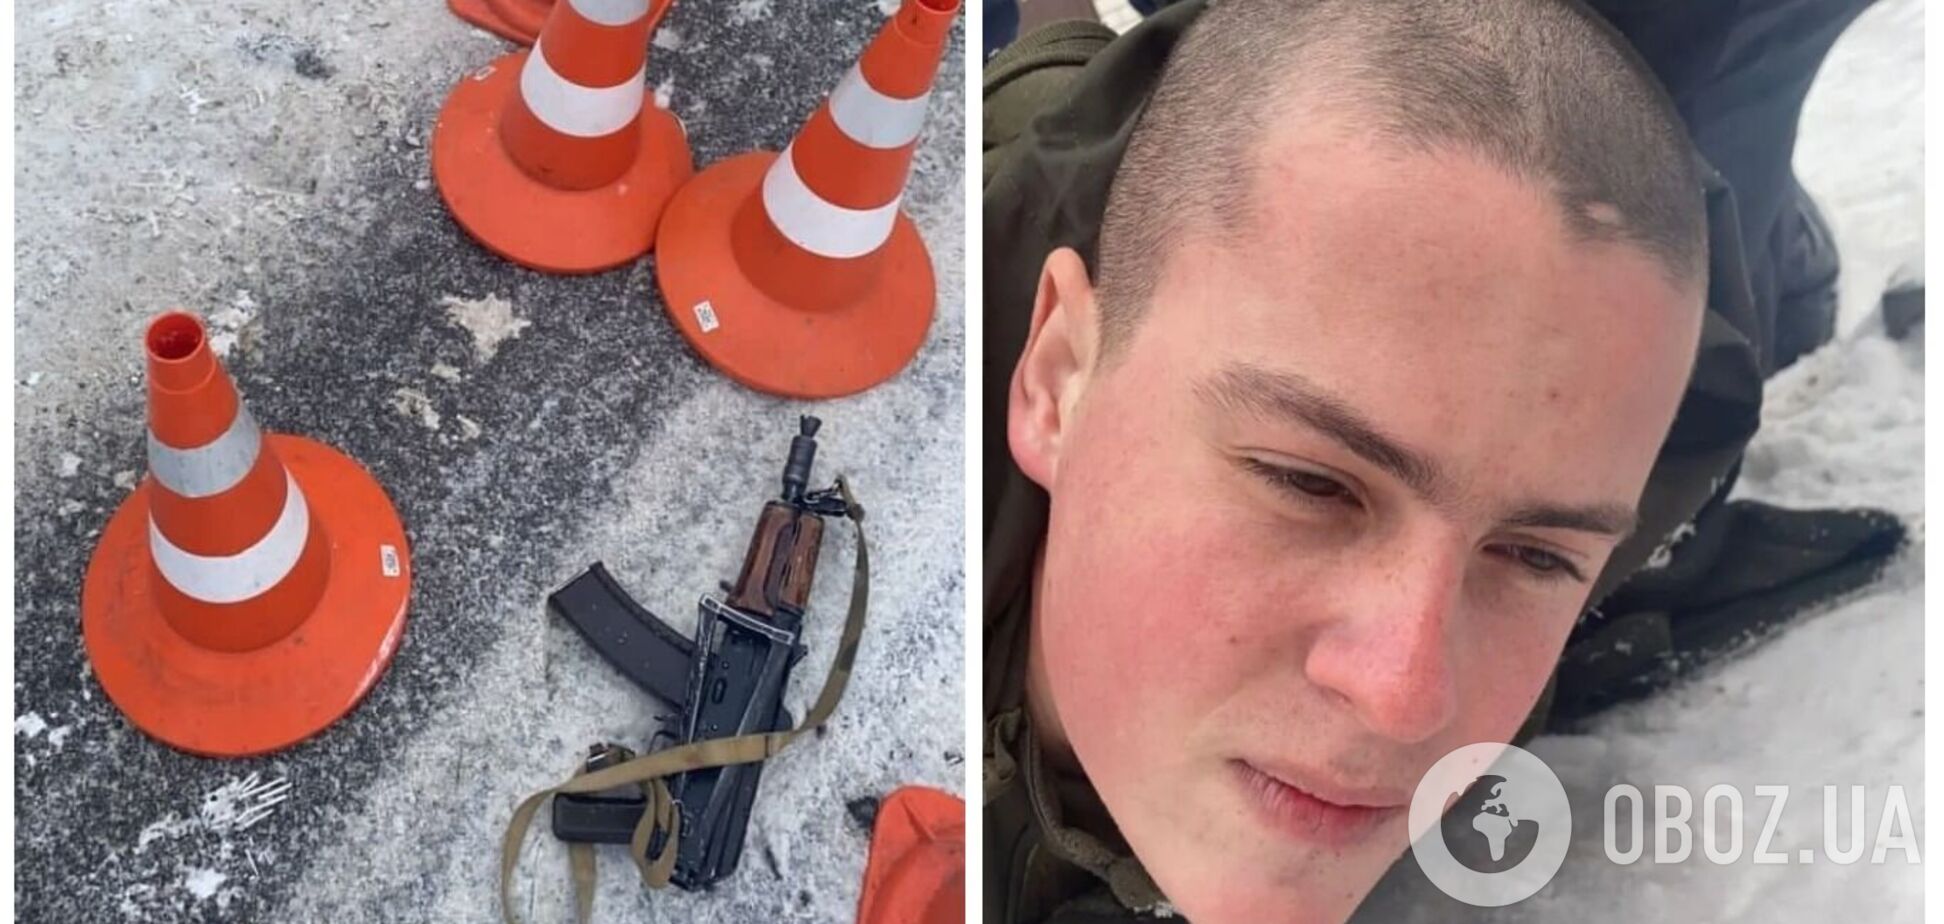 В Днепре 20-летний солдат расстрелял сослуживцев: пять человек погибли, ему объявили о подозрении. Фото и видео